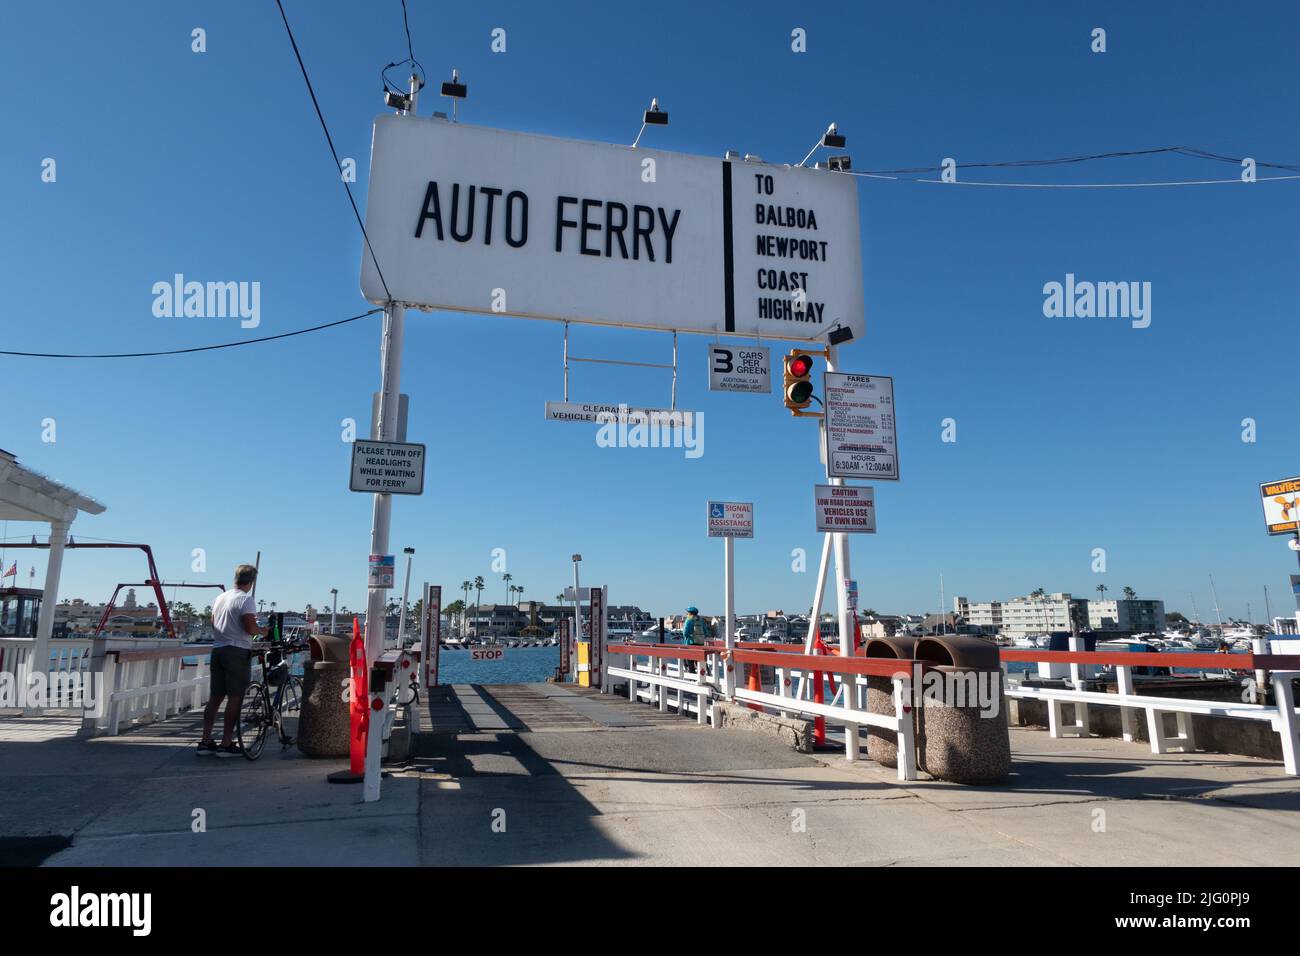 Altmodische kleine Autofähre Eingang auf Balboa Island Newport Strand südkalifornien USA Stockfoto